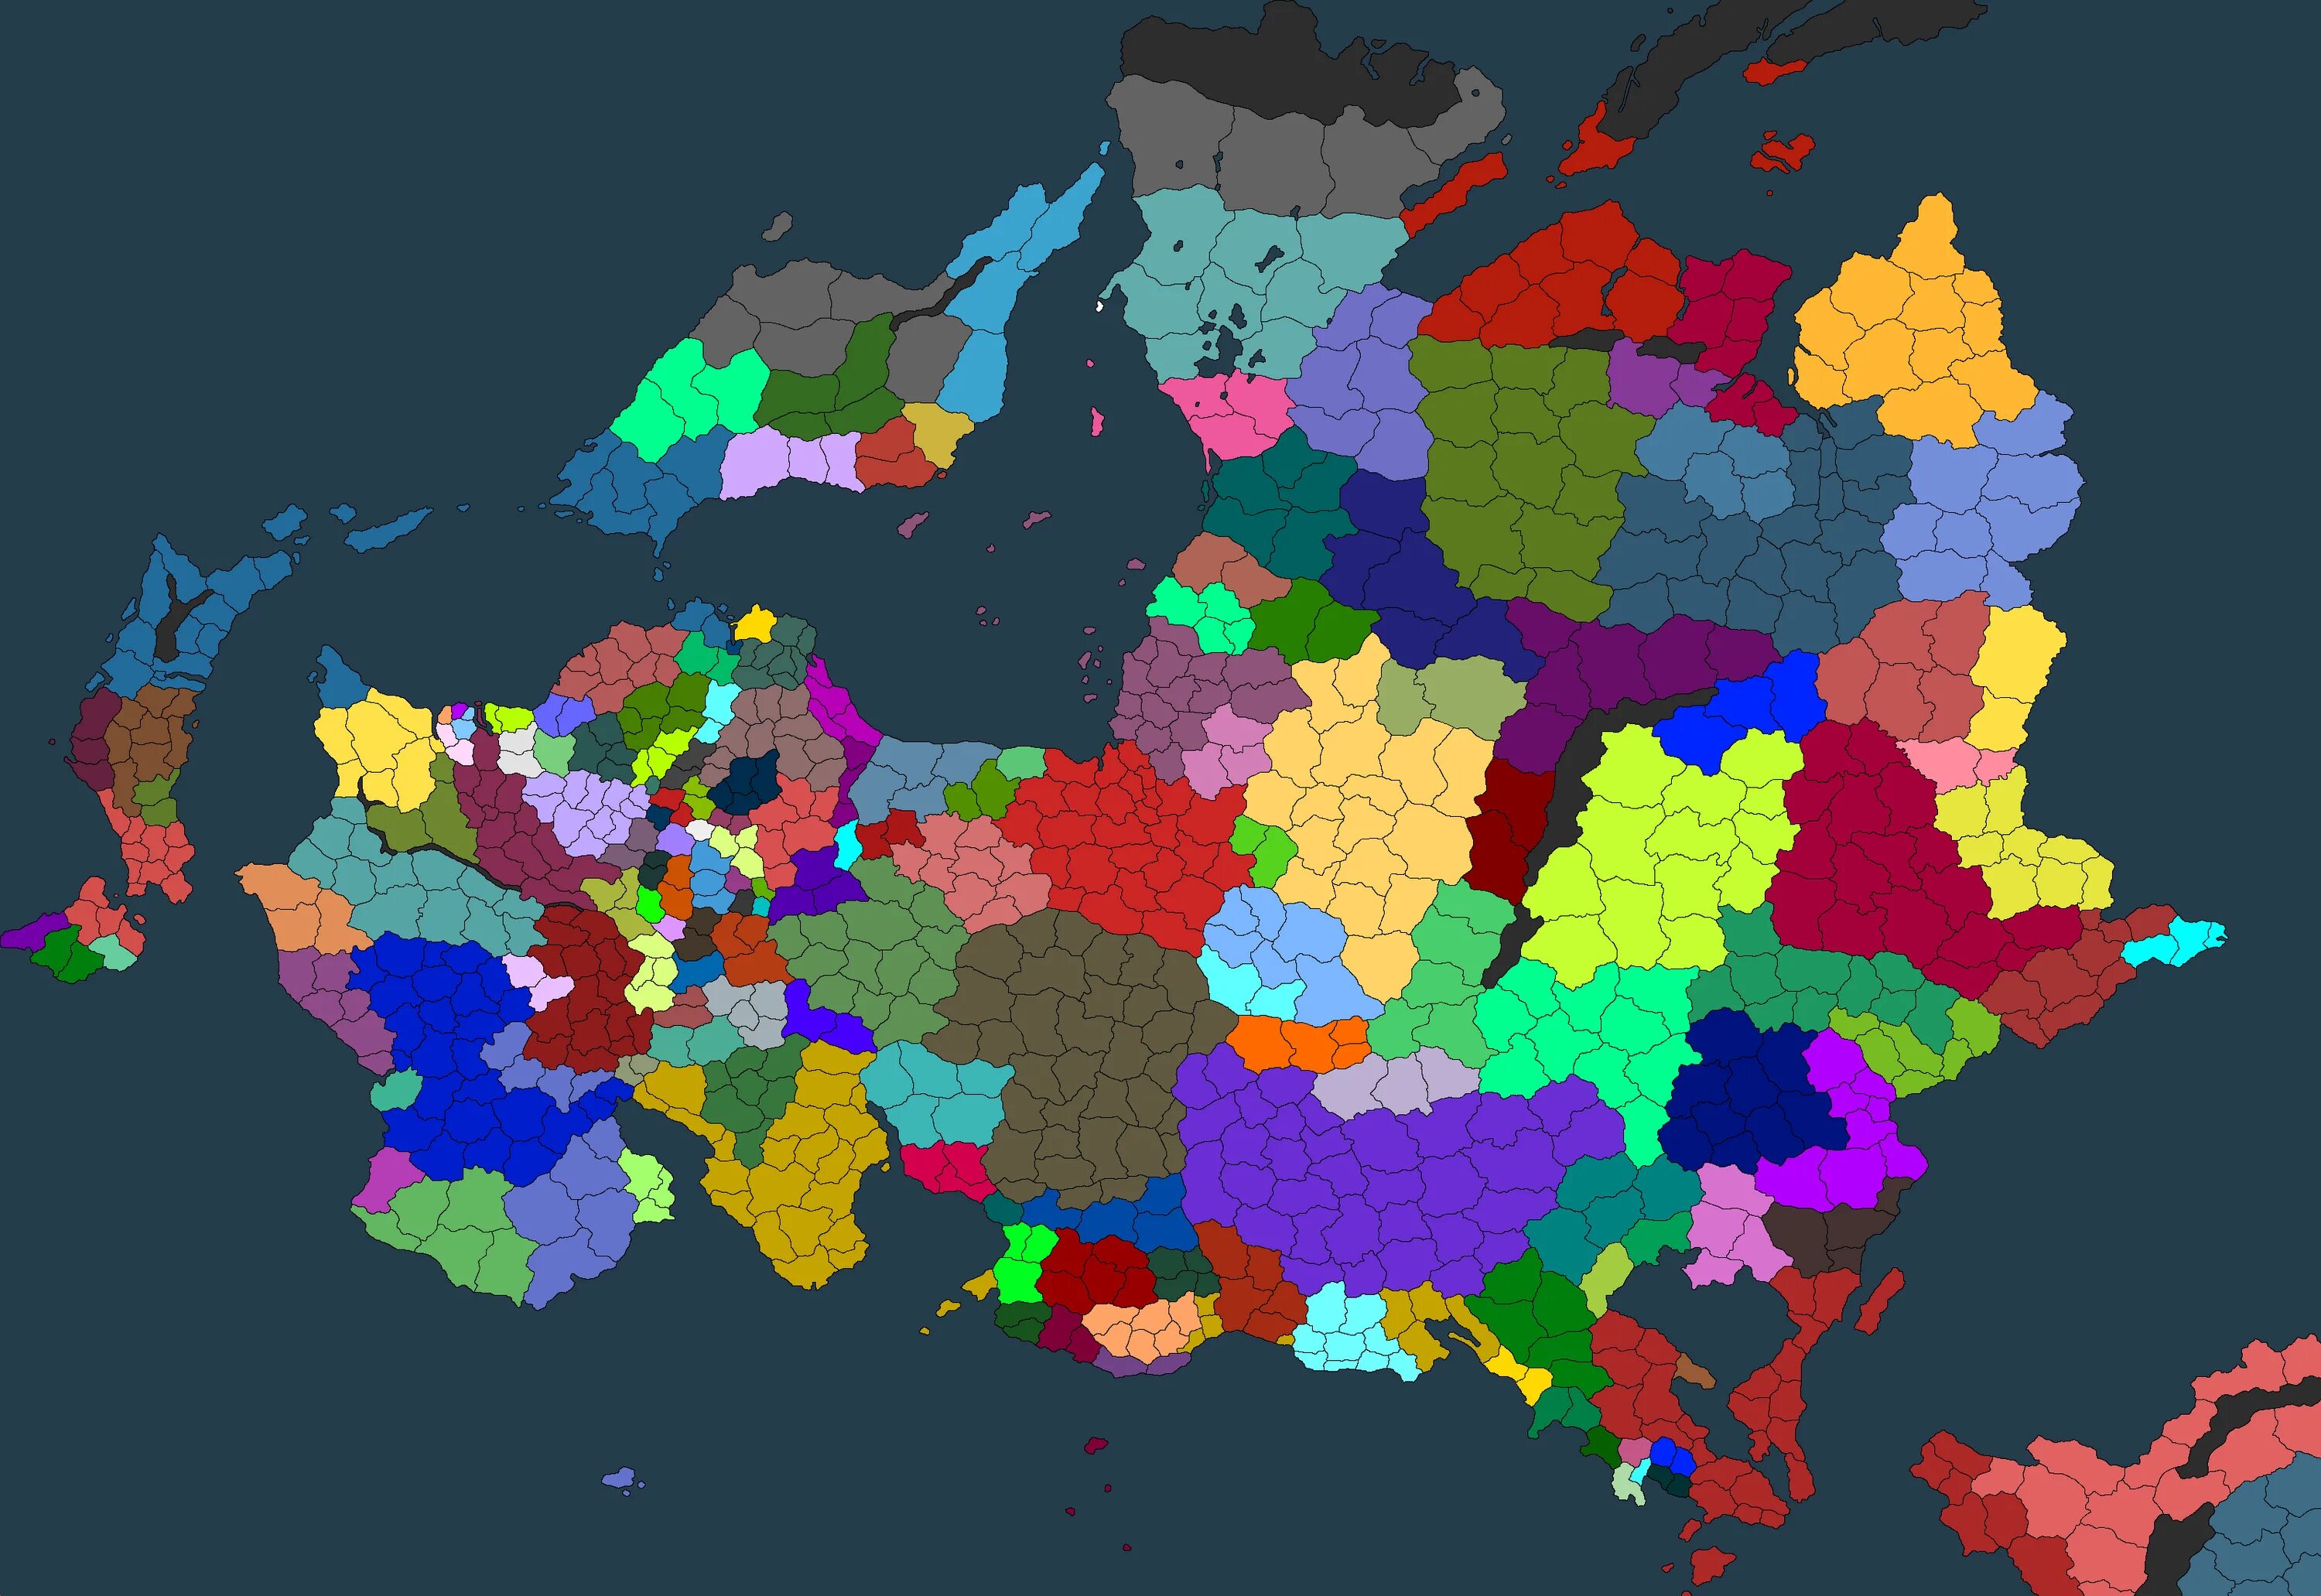 Maps for mapping. Карта провинций eu4. Карта Европы 1444 года для ВПИ. Карта Европы для ВПИ С провинциями. Современная карта мира с провинциями Европы униыерсалис ь4.